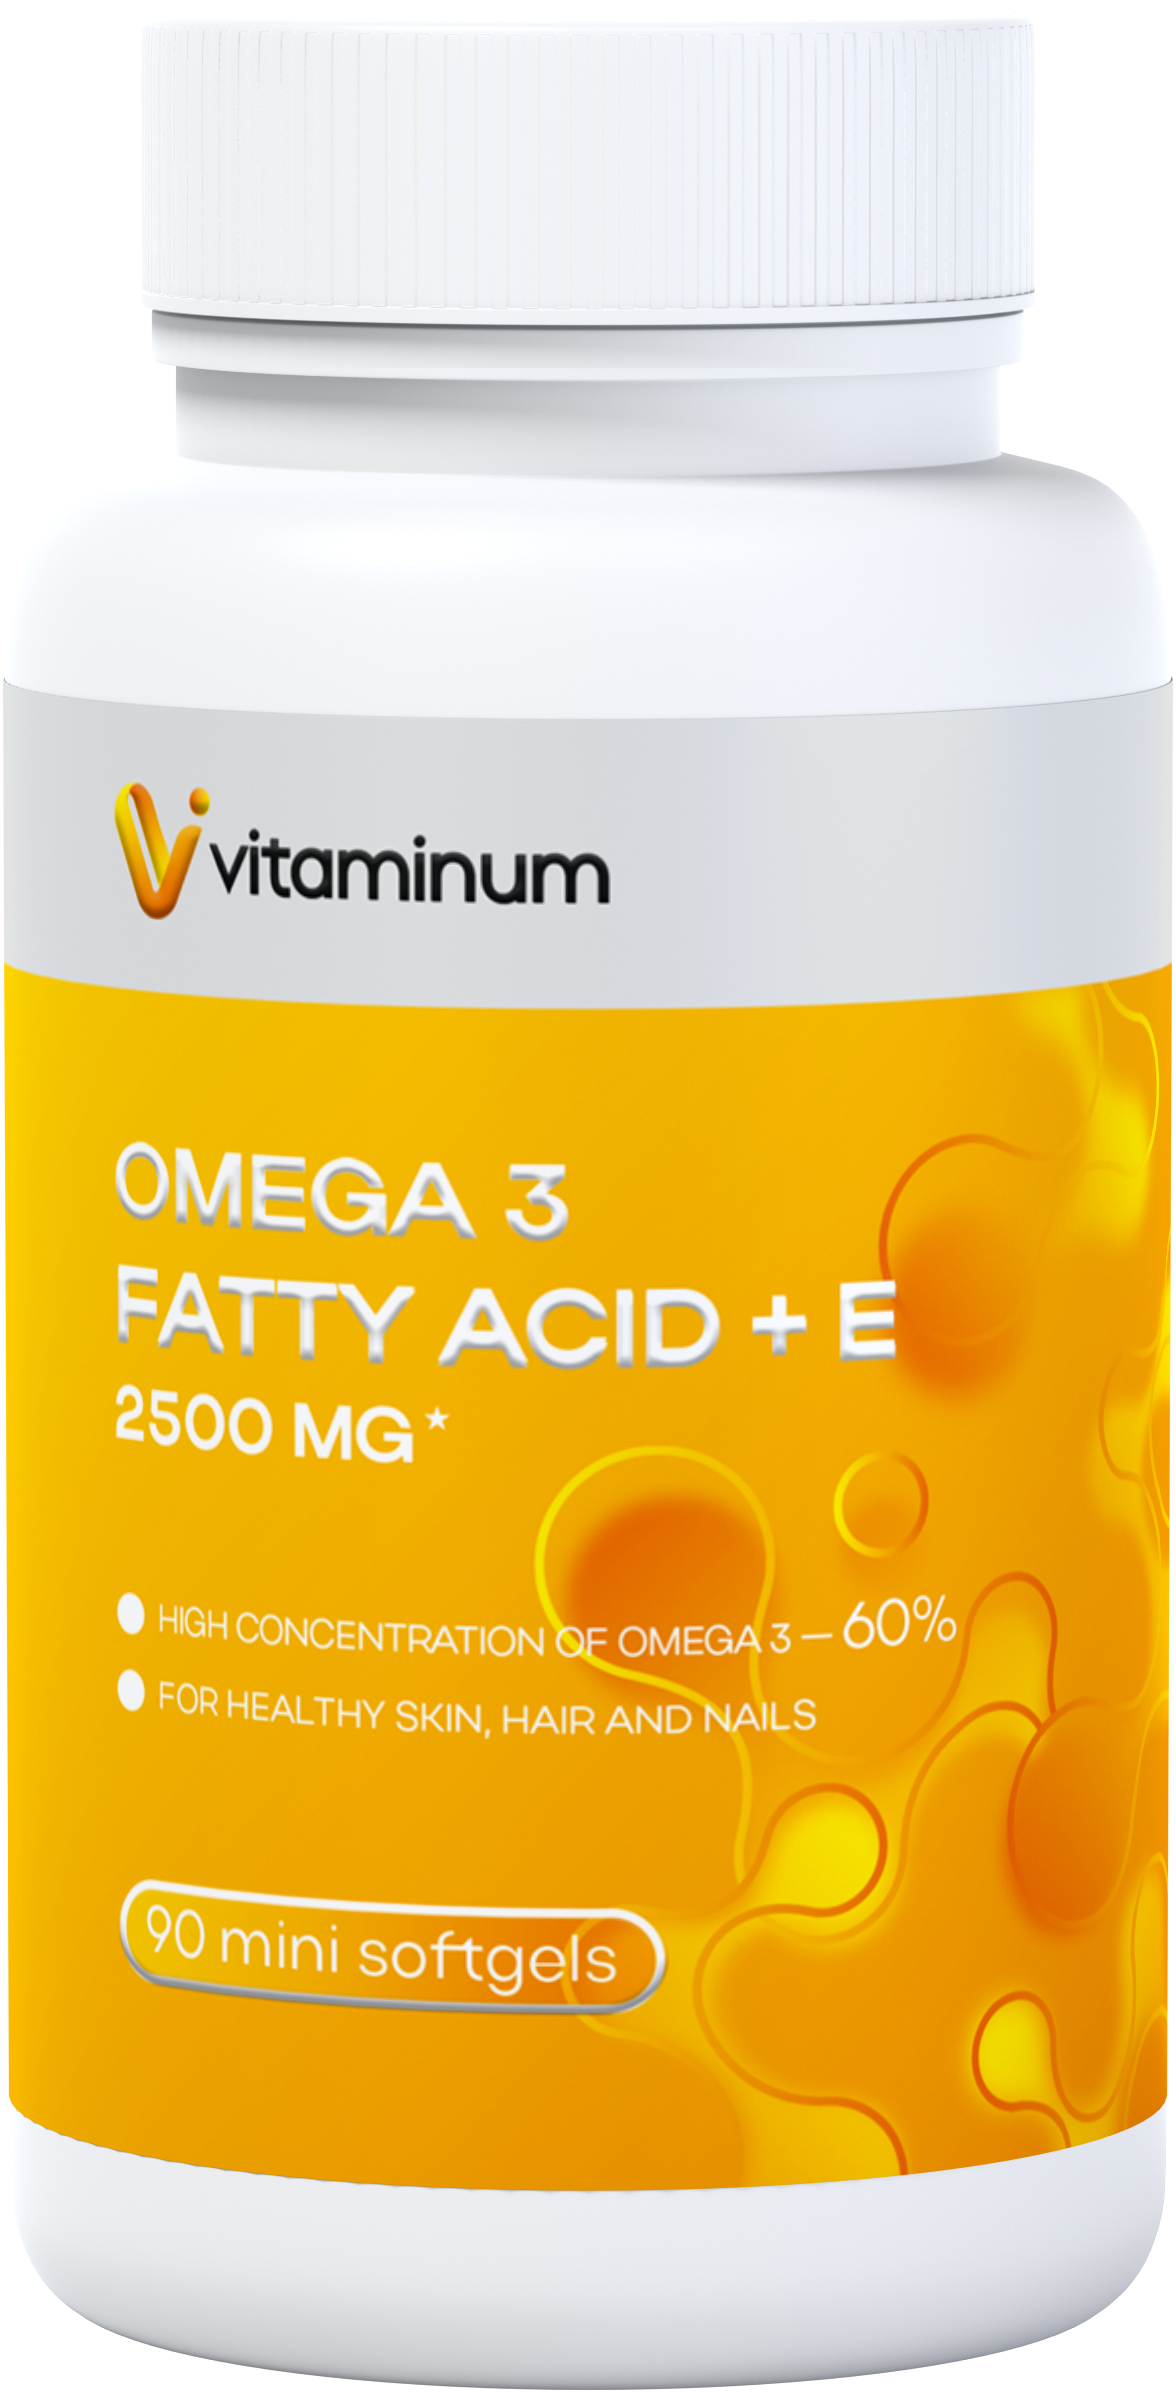  Vitaminum ОМЕГА 3 60% + витамин Е (2500 MG*) 90 капсул 700 мг   в Братске